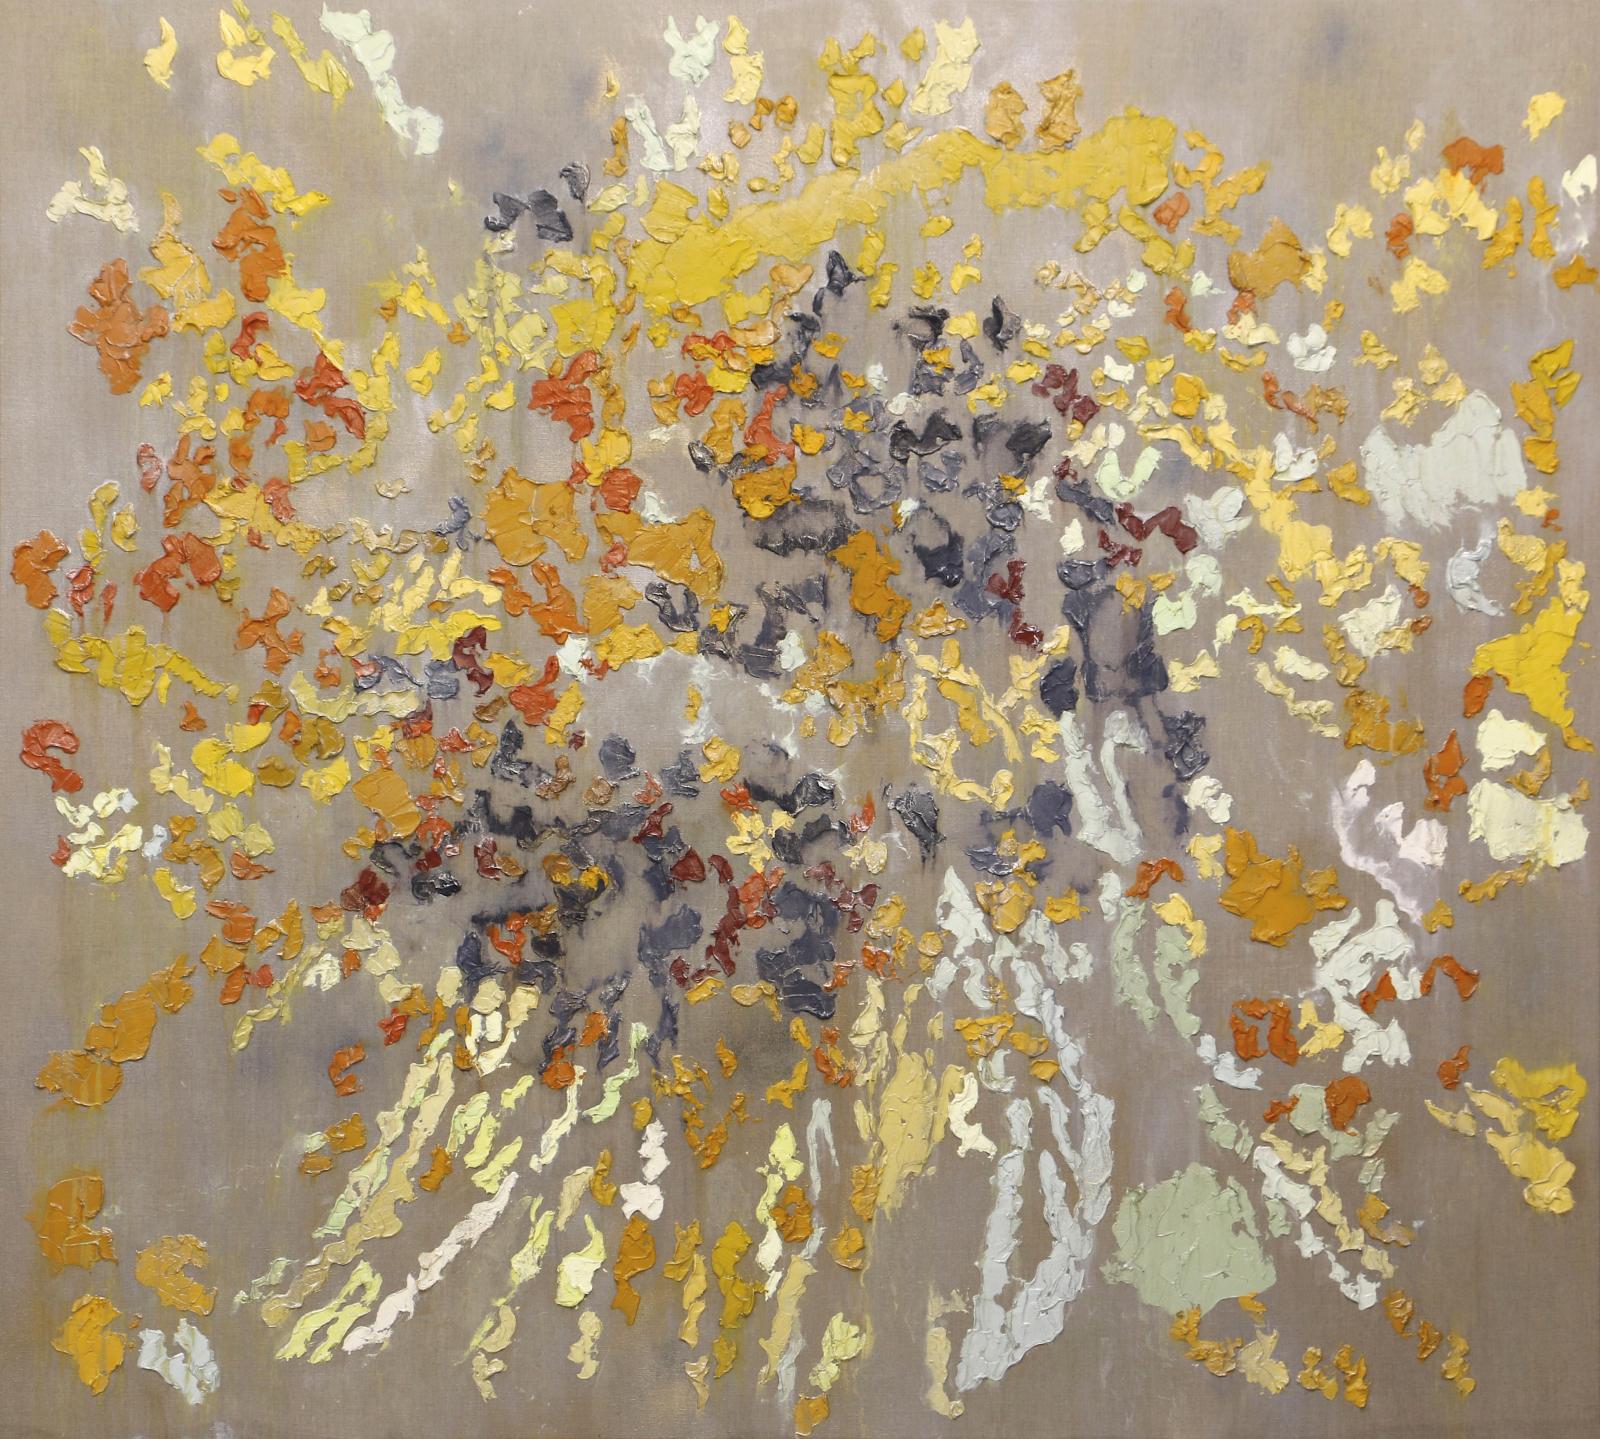 Brendan Stuart Burns (né en 1963), Twinge, 2016, huile et cire sur lin, 180 x 200 cm. © Rosenberg & Co